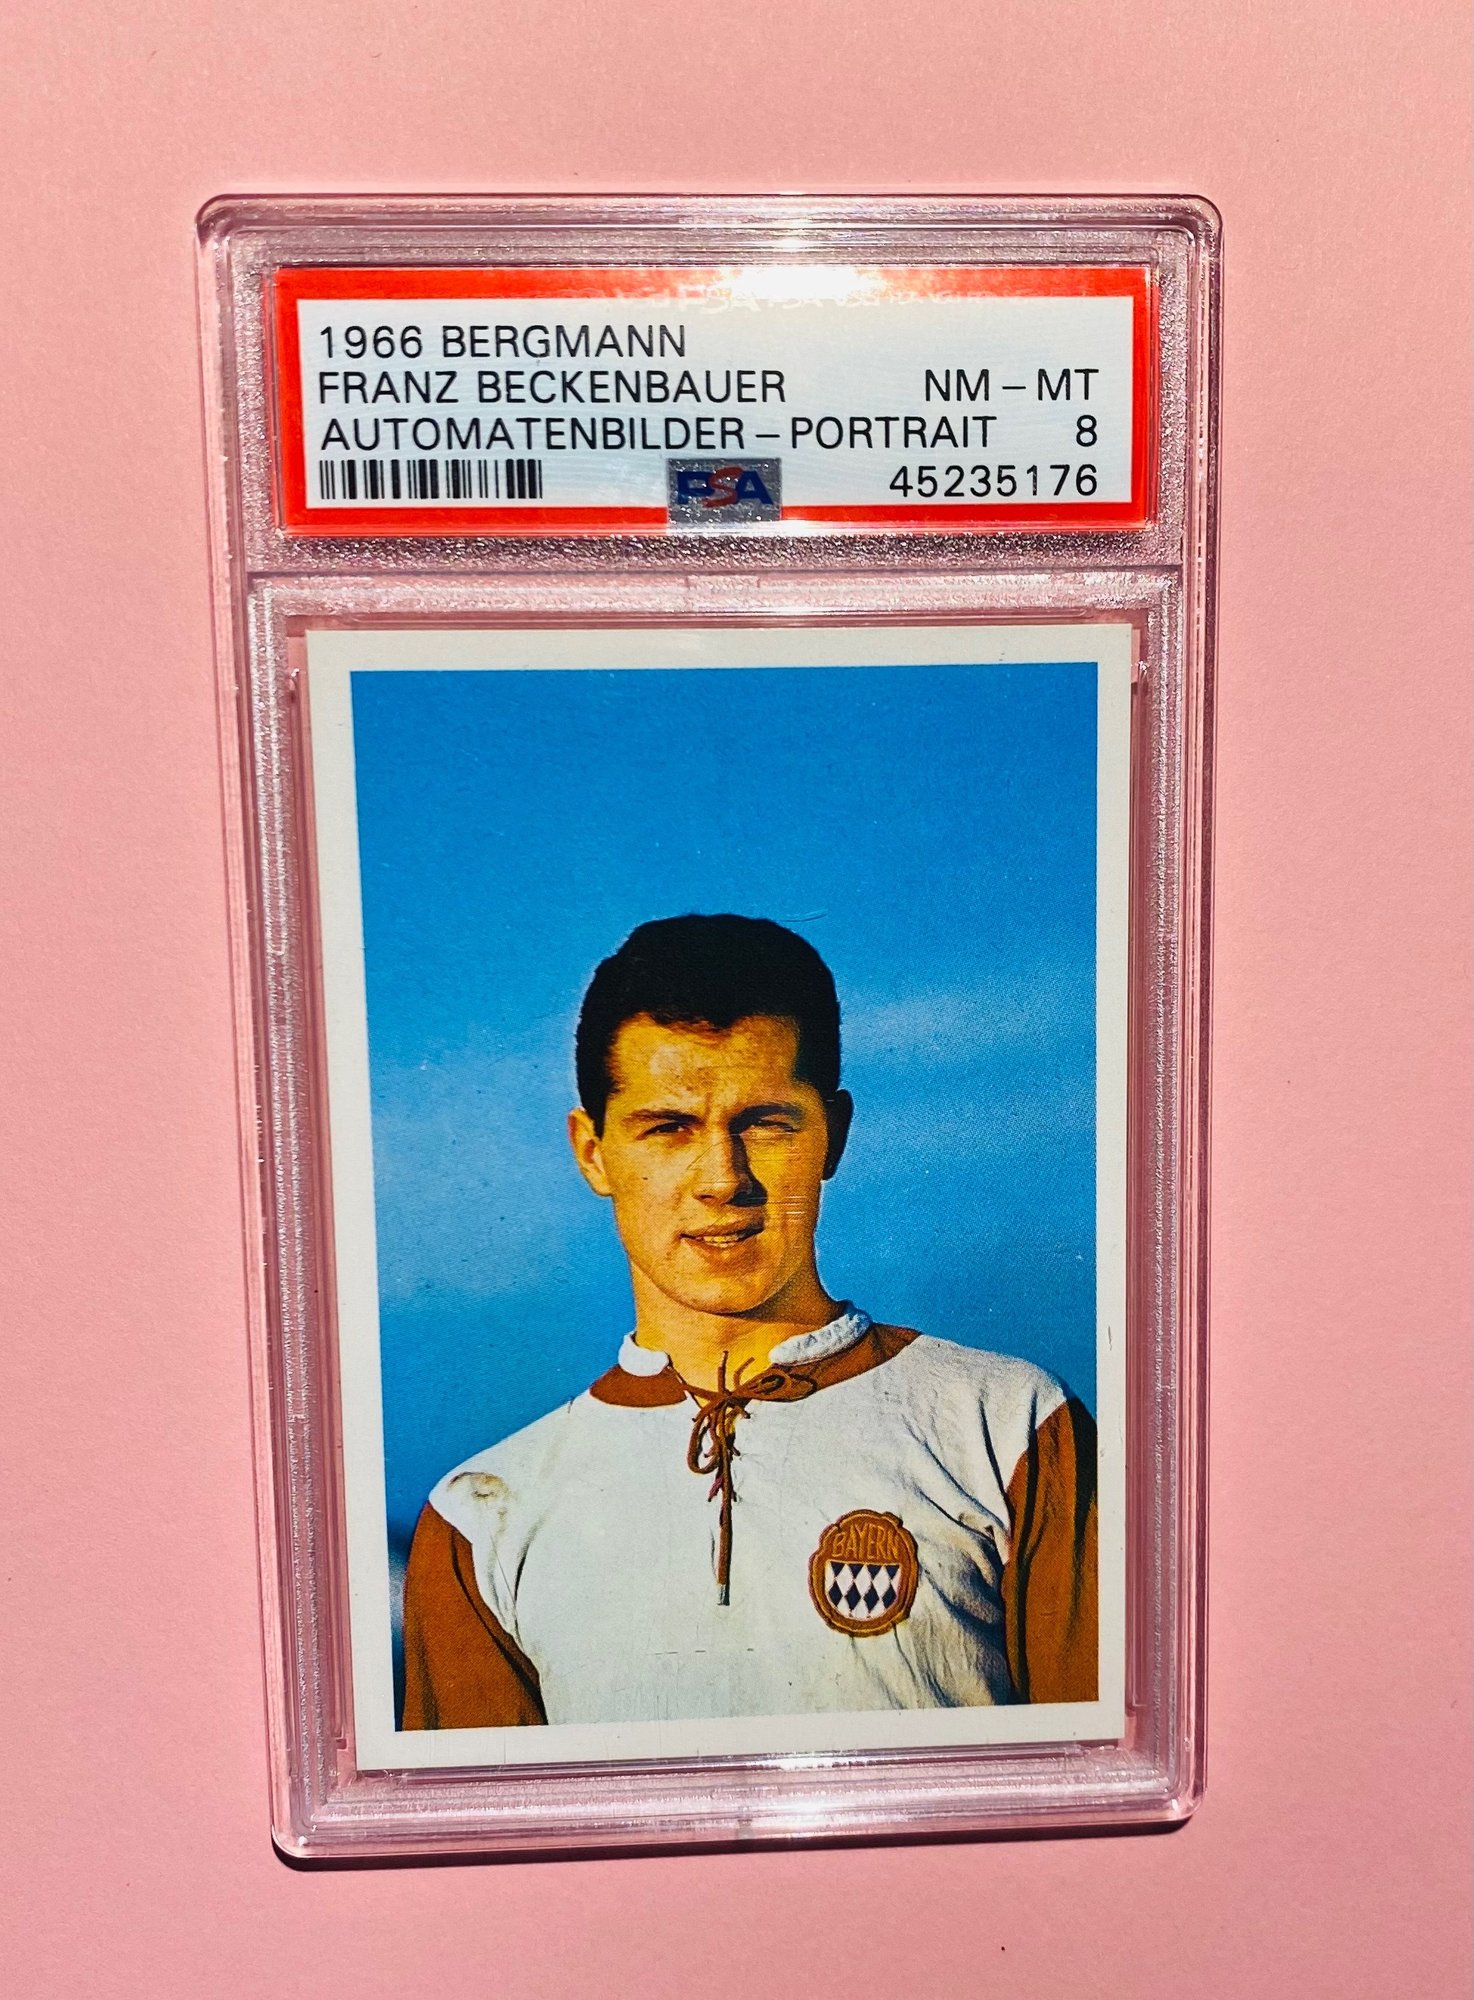 The Beckenbauer Bergmann Rookie Card © Ballerstaedt